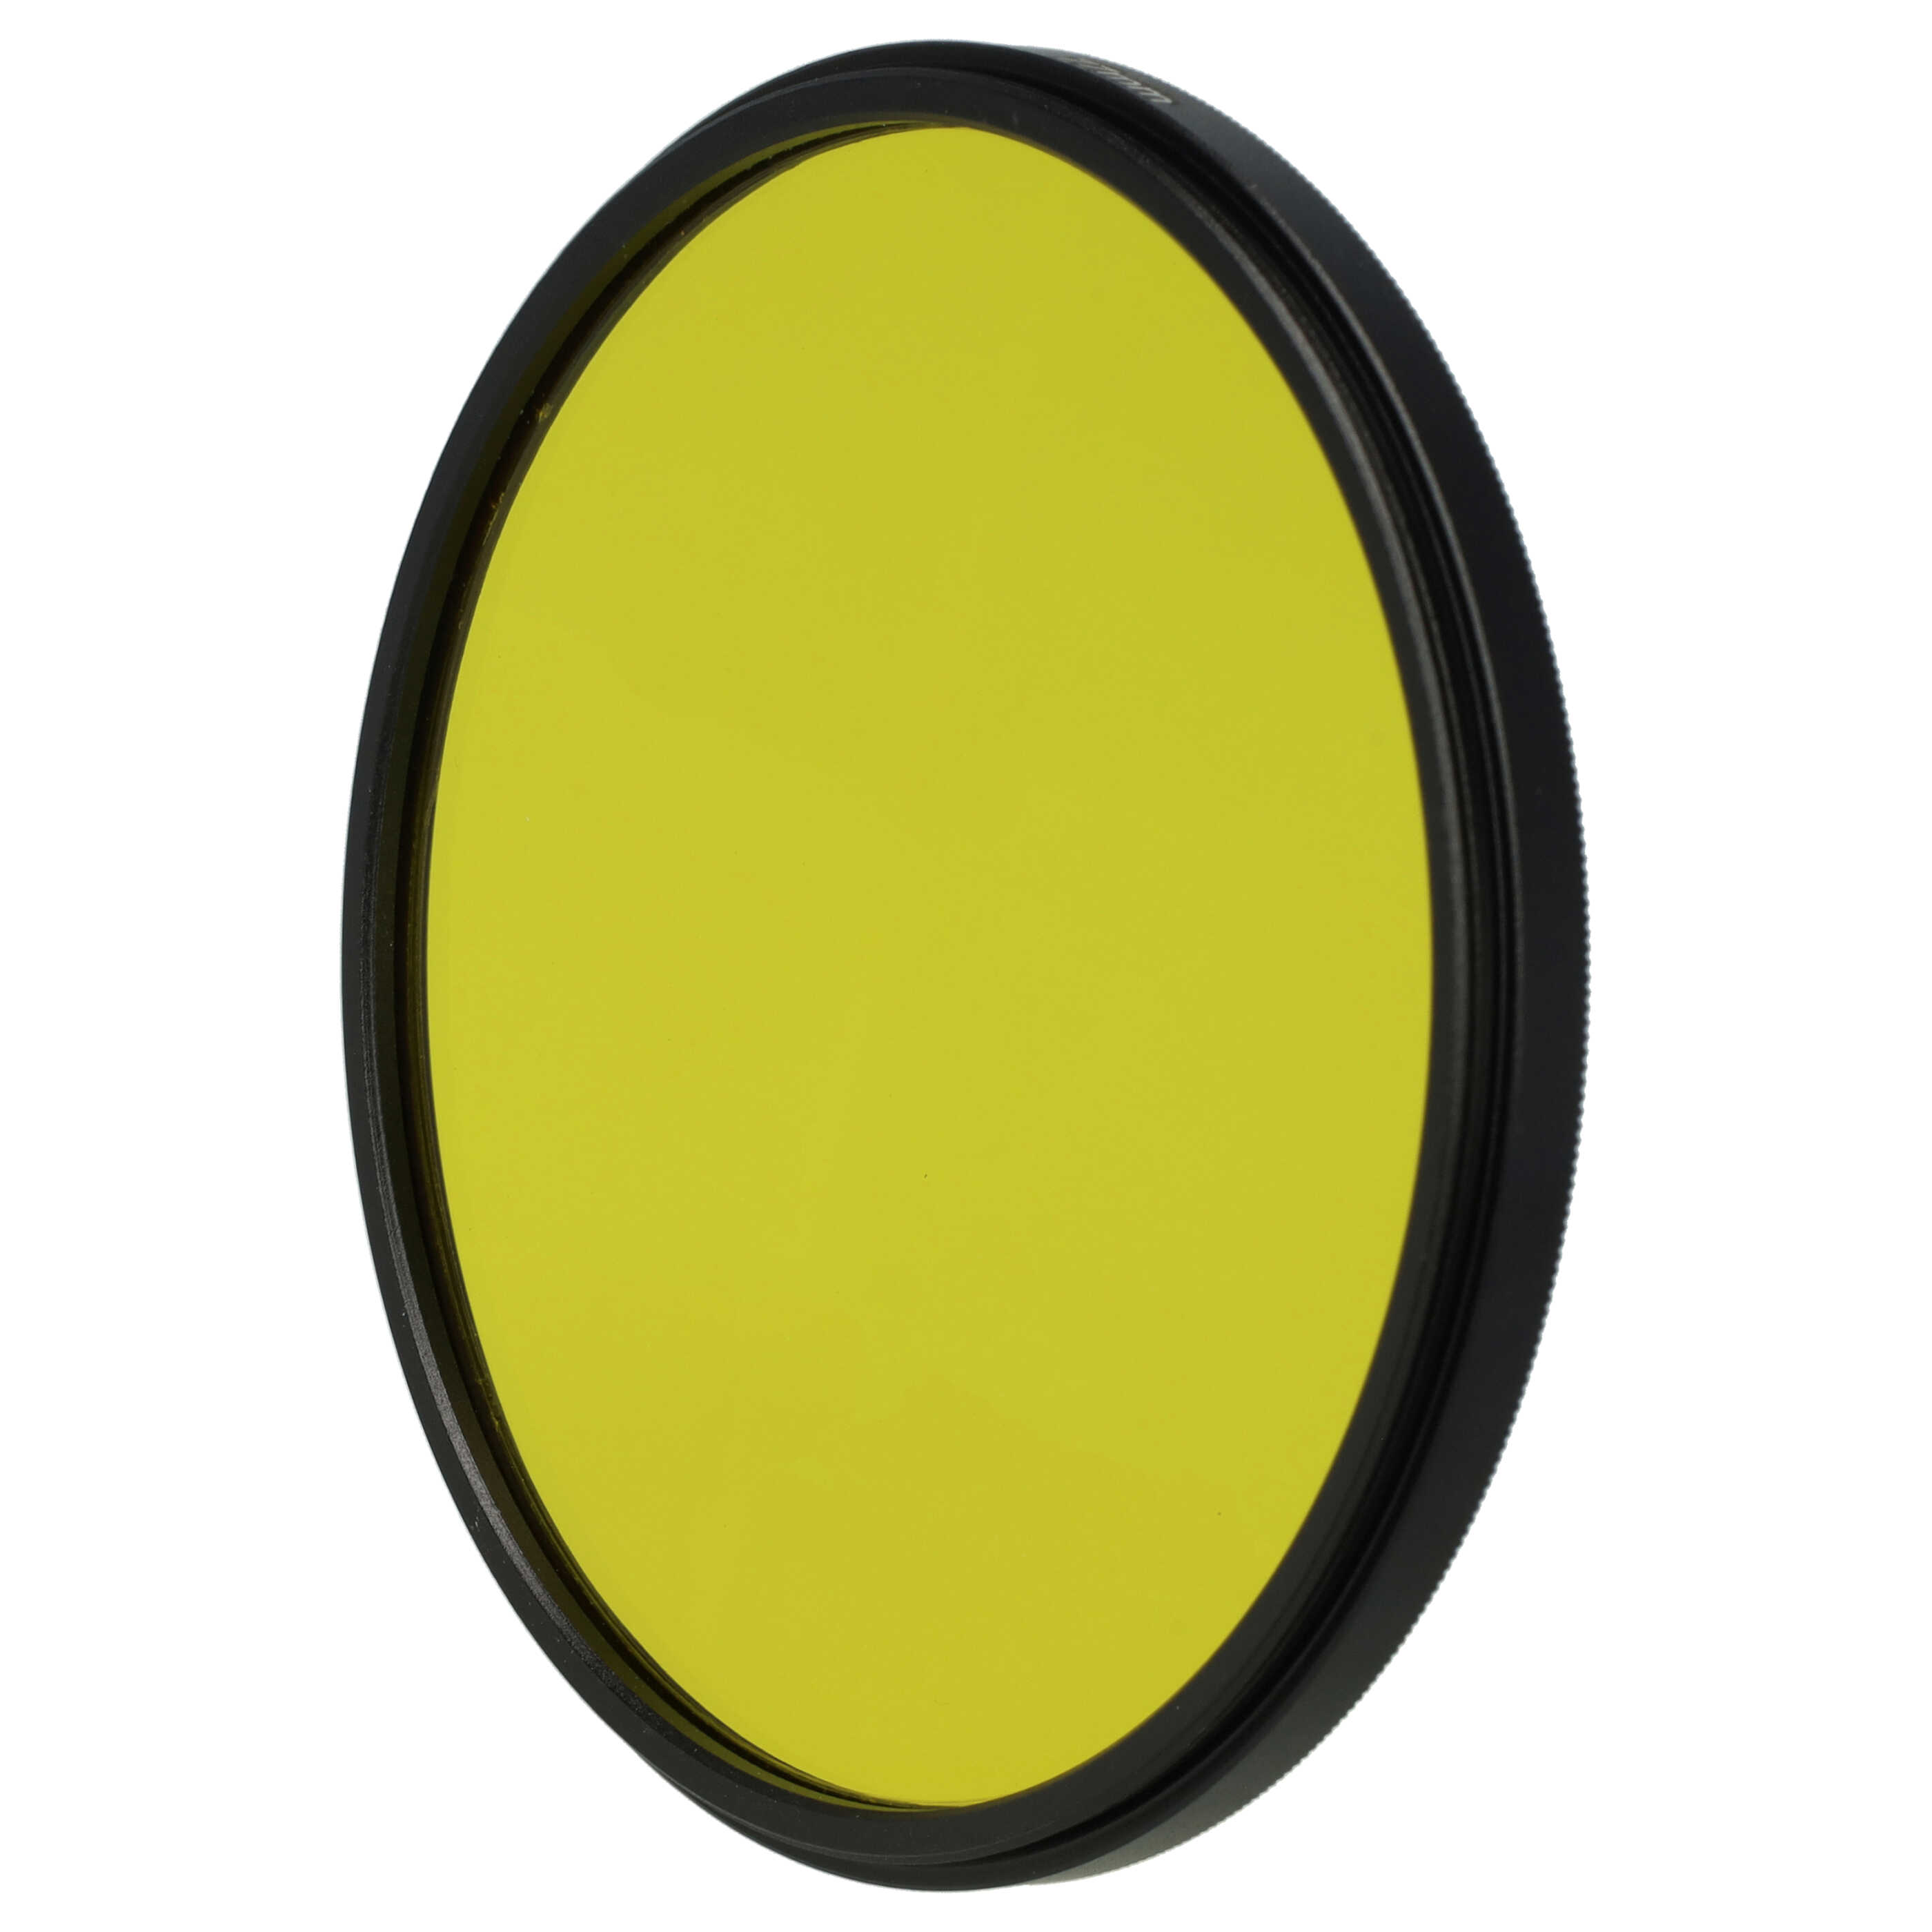 Filtro colorato per obiettivi fotocamera con filettatura da 77 mm - filtro giallo